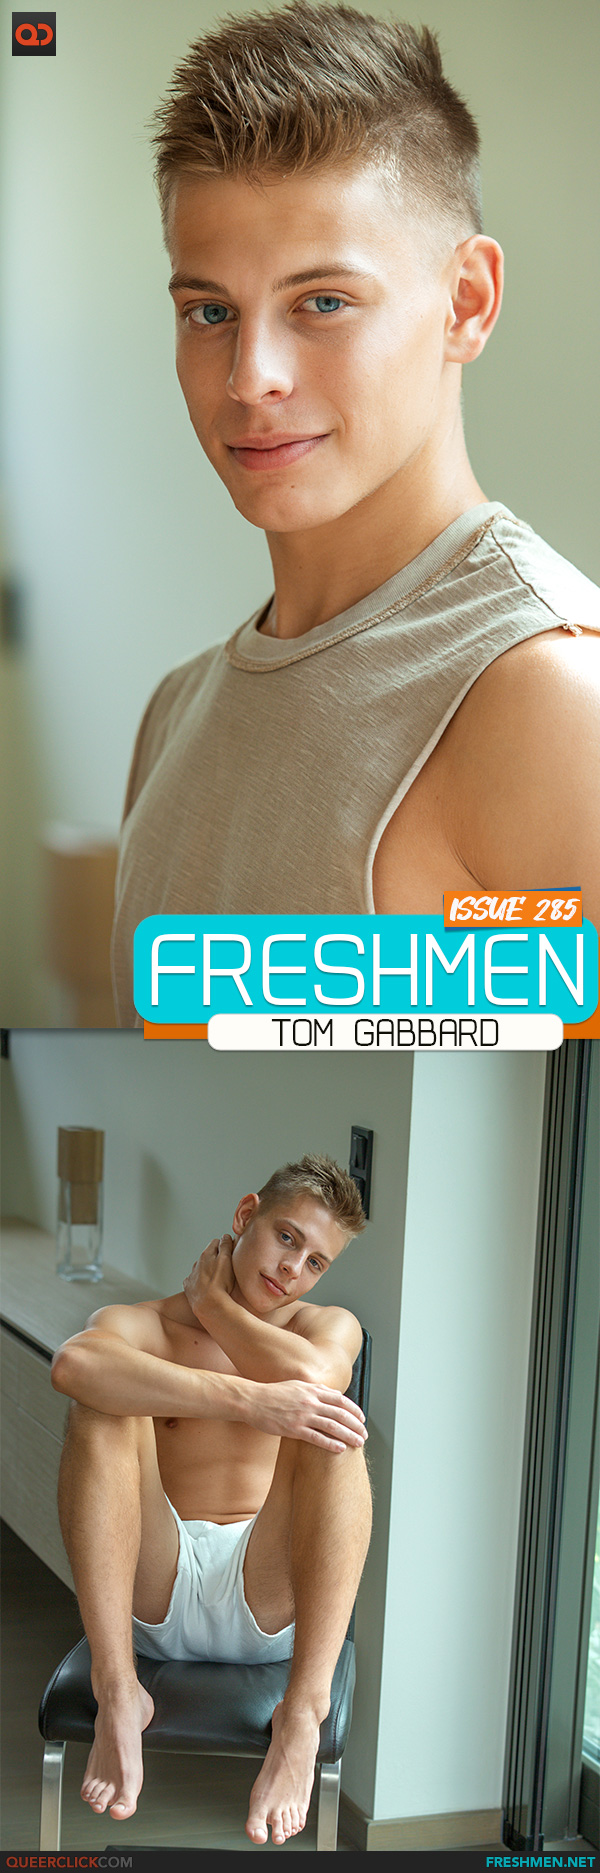 Freshmen: Tom Gabbard